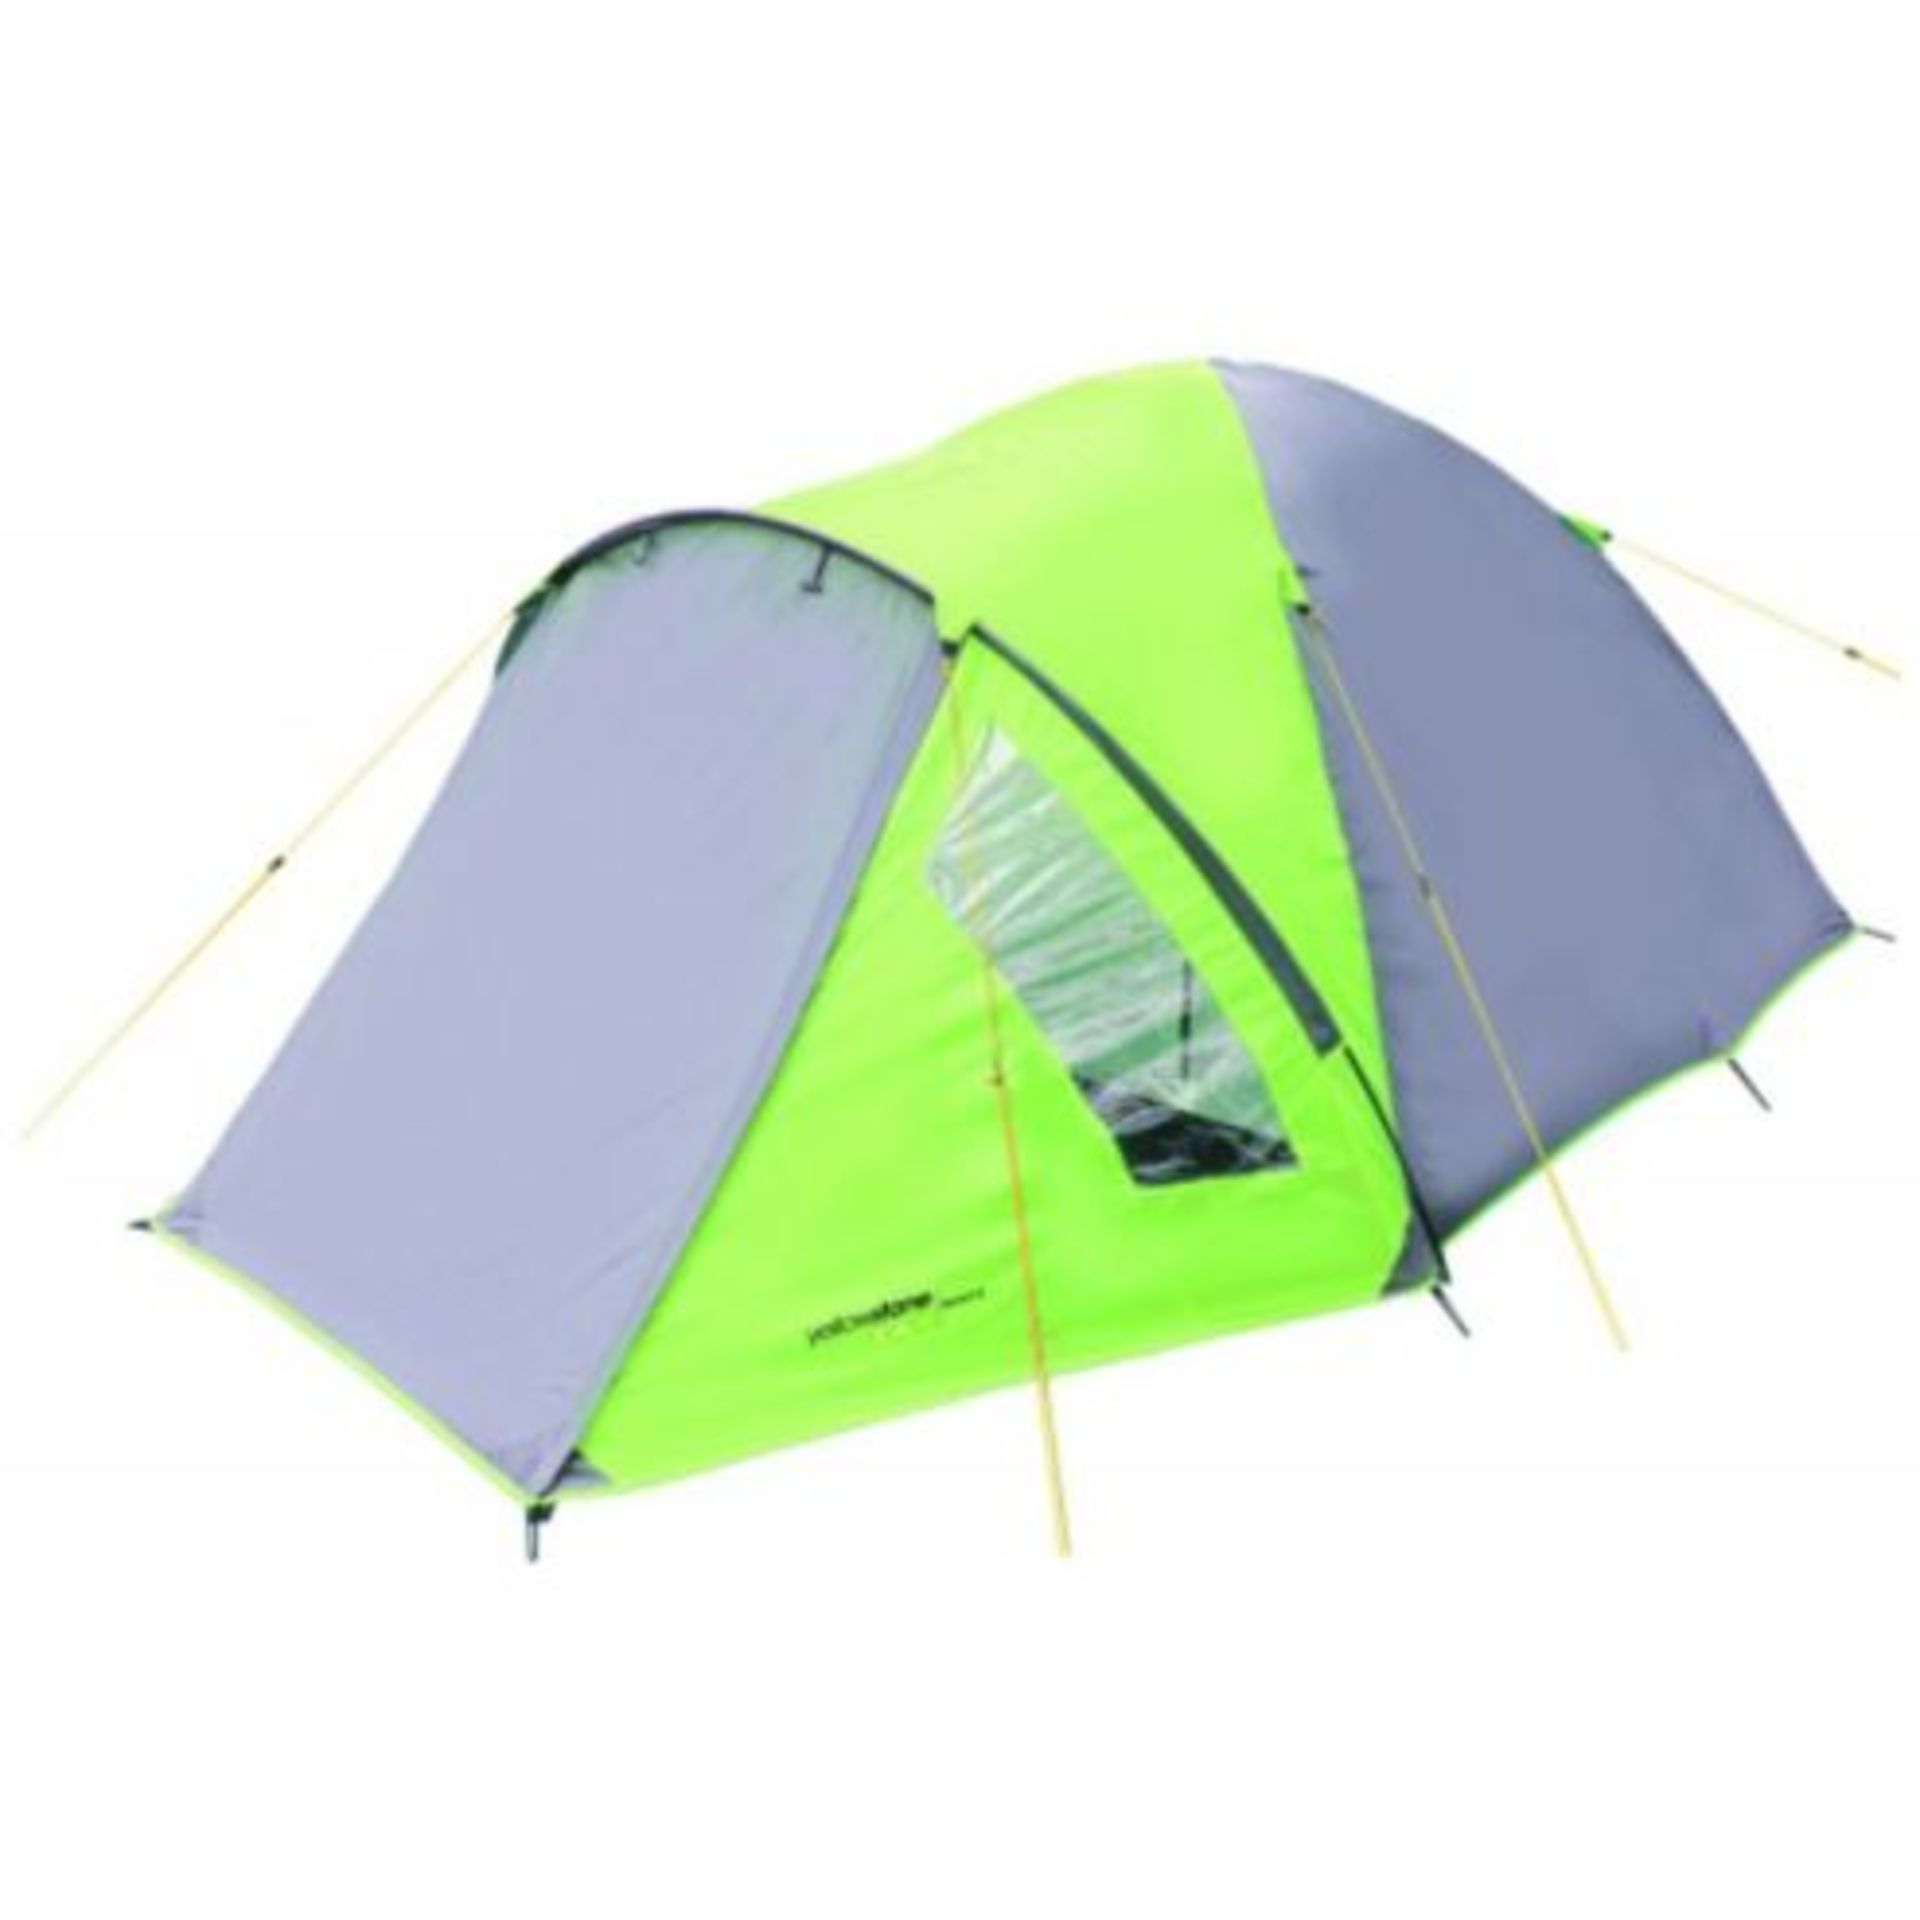 Grade A Ascent 4 Man Dome Tent